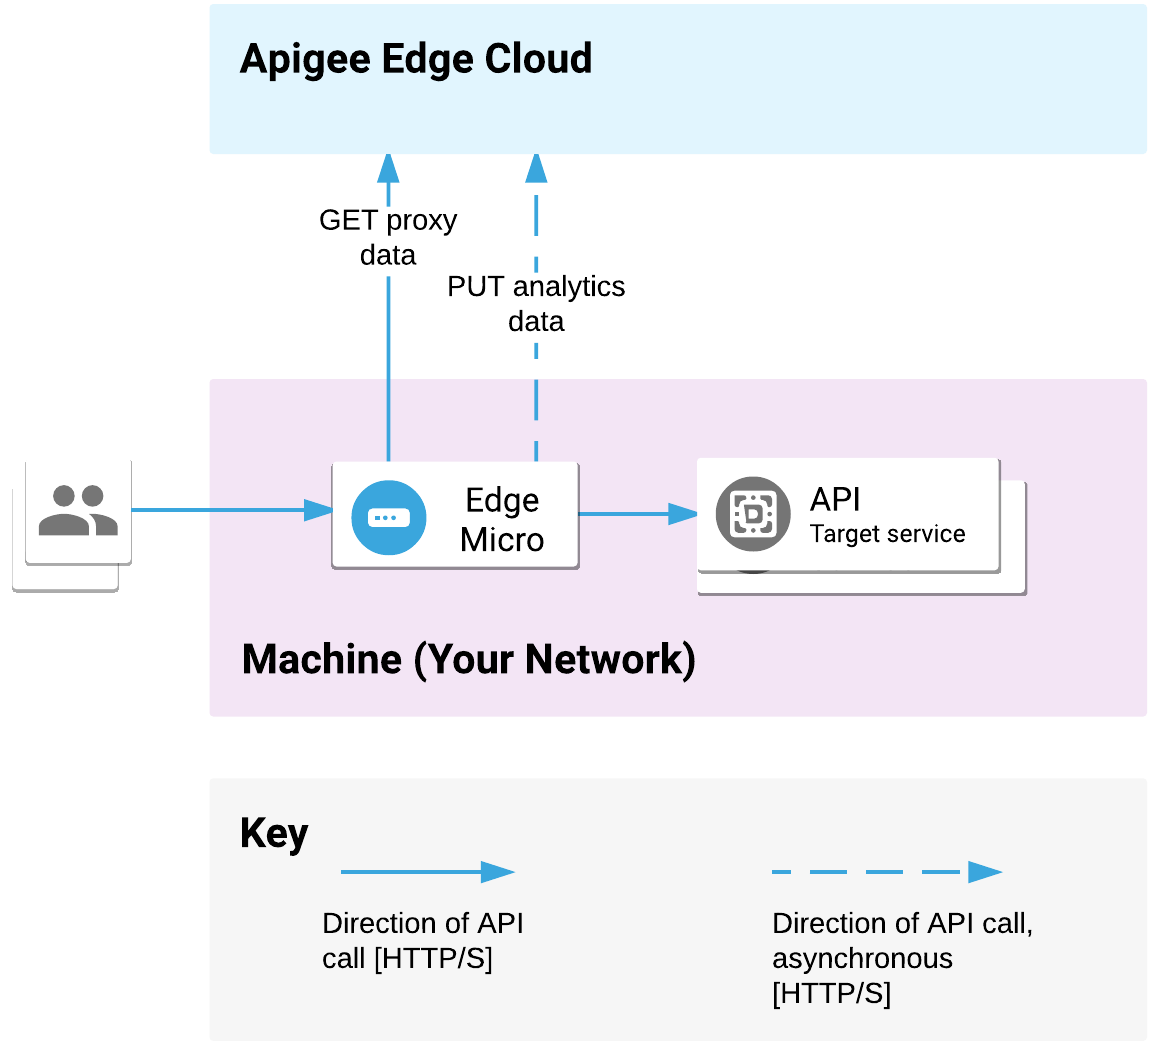 Edge 마이크로 게이트웨이가 네트워크에 배포됩니다. 클라이언트의 API 요청을 처리하고 대상 서비스를 호출합니다. 마이크로 게이트웨이는 Apigee Edge Cloud와 프록시 및 분석 데이터를 통신합니다.